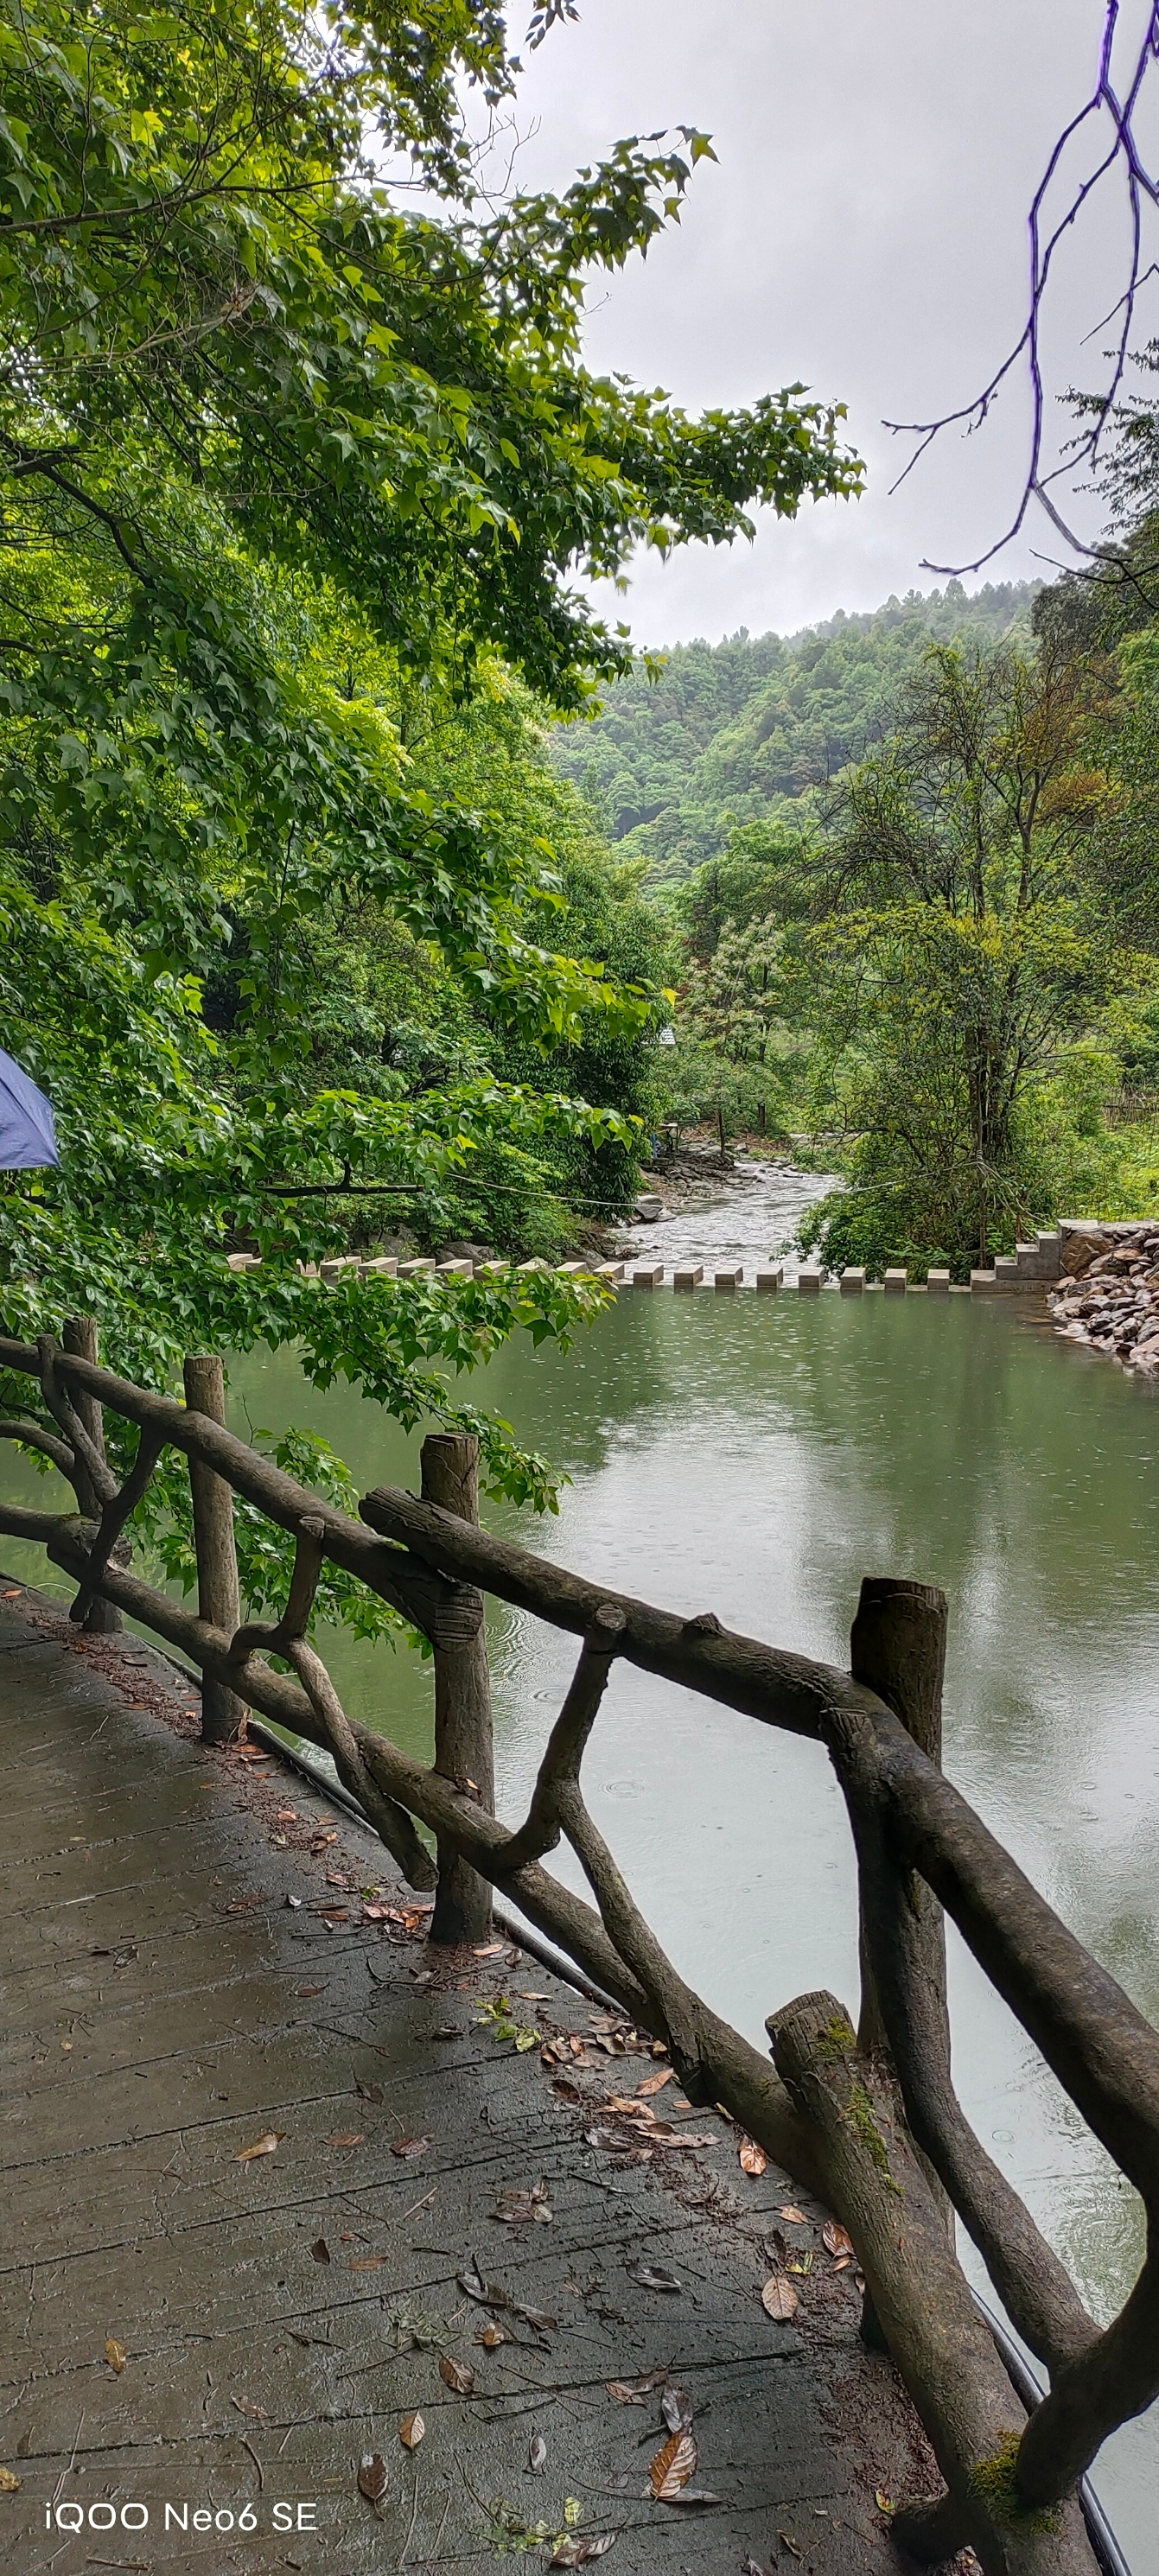 我美丽的家乡芷江侗族自治县！三道坑森林景区，不一样的风景，让我们一起走进大自然！呼吸原始的空气！！